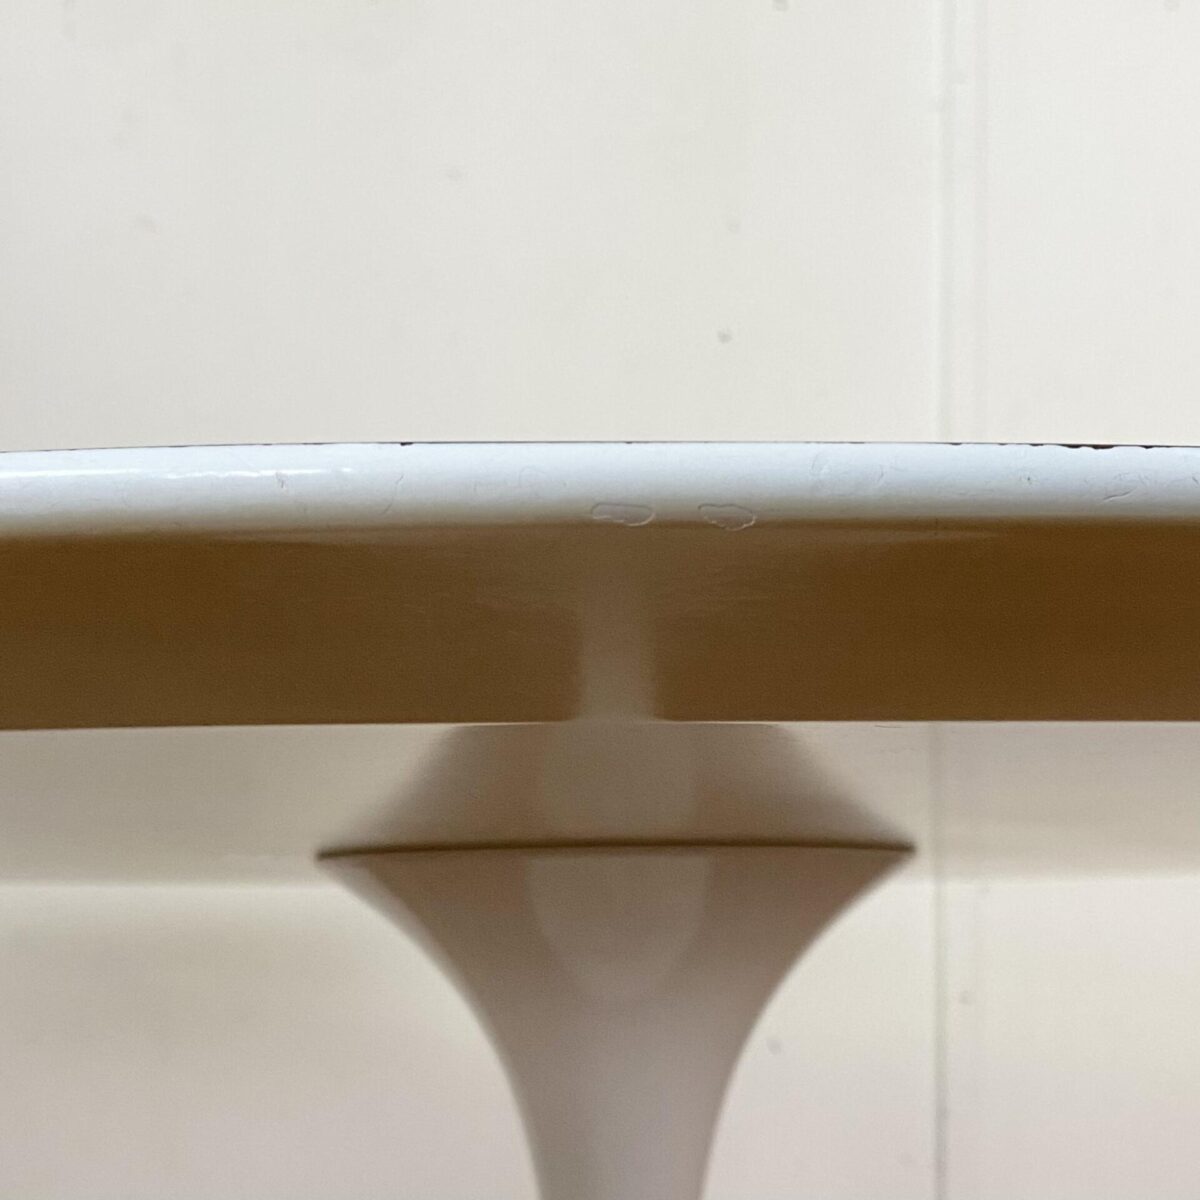 Runder Tulpenfuss Tisch von Eero Sarinnen. Entwurf aus den 50er Jahren, hergestellt von Knoll International. Durchmesser 120cm Höhe 70.5cm. Das Tischblatt ist mit weissem Kunstharz beschichtet, die abgeflachte Tischkante ist lackiert.